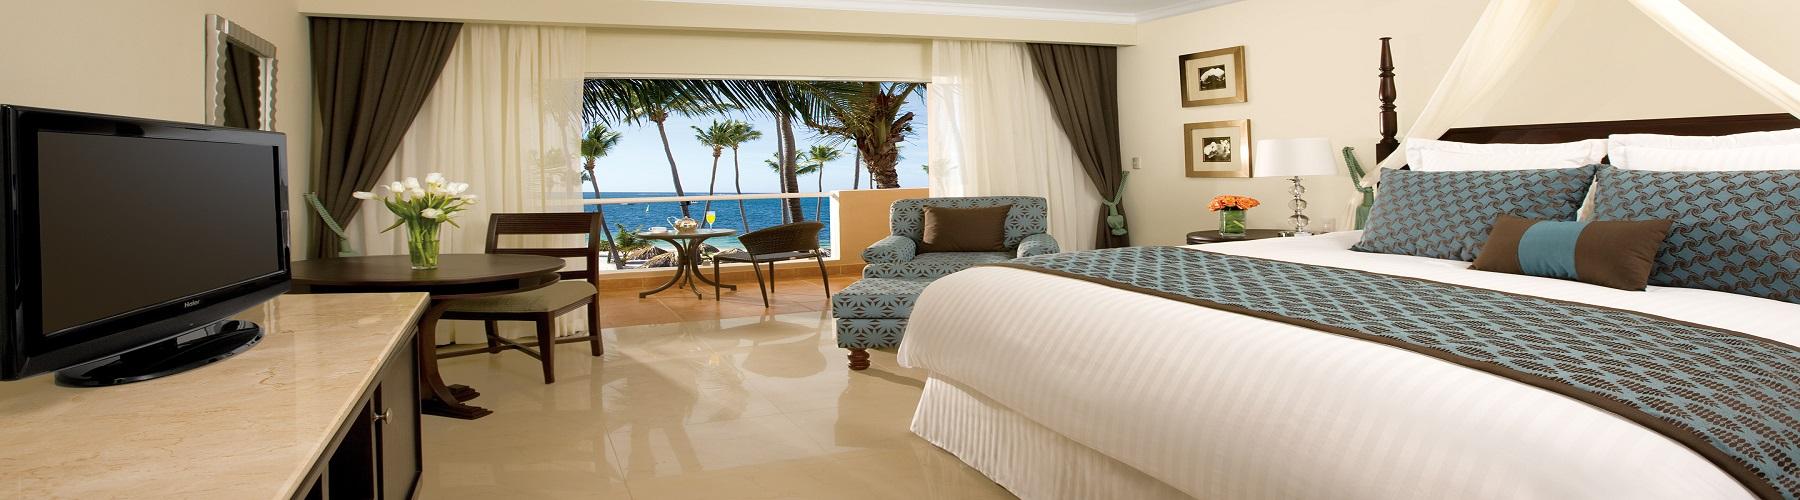 Забронировать отель Dreams Palm Beach Punta Cana